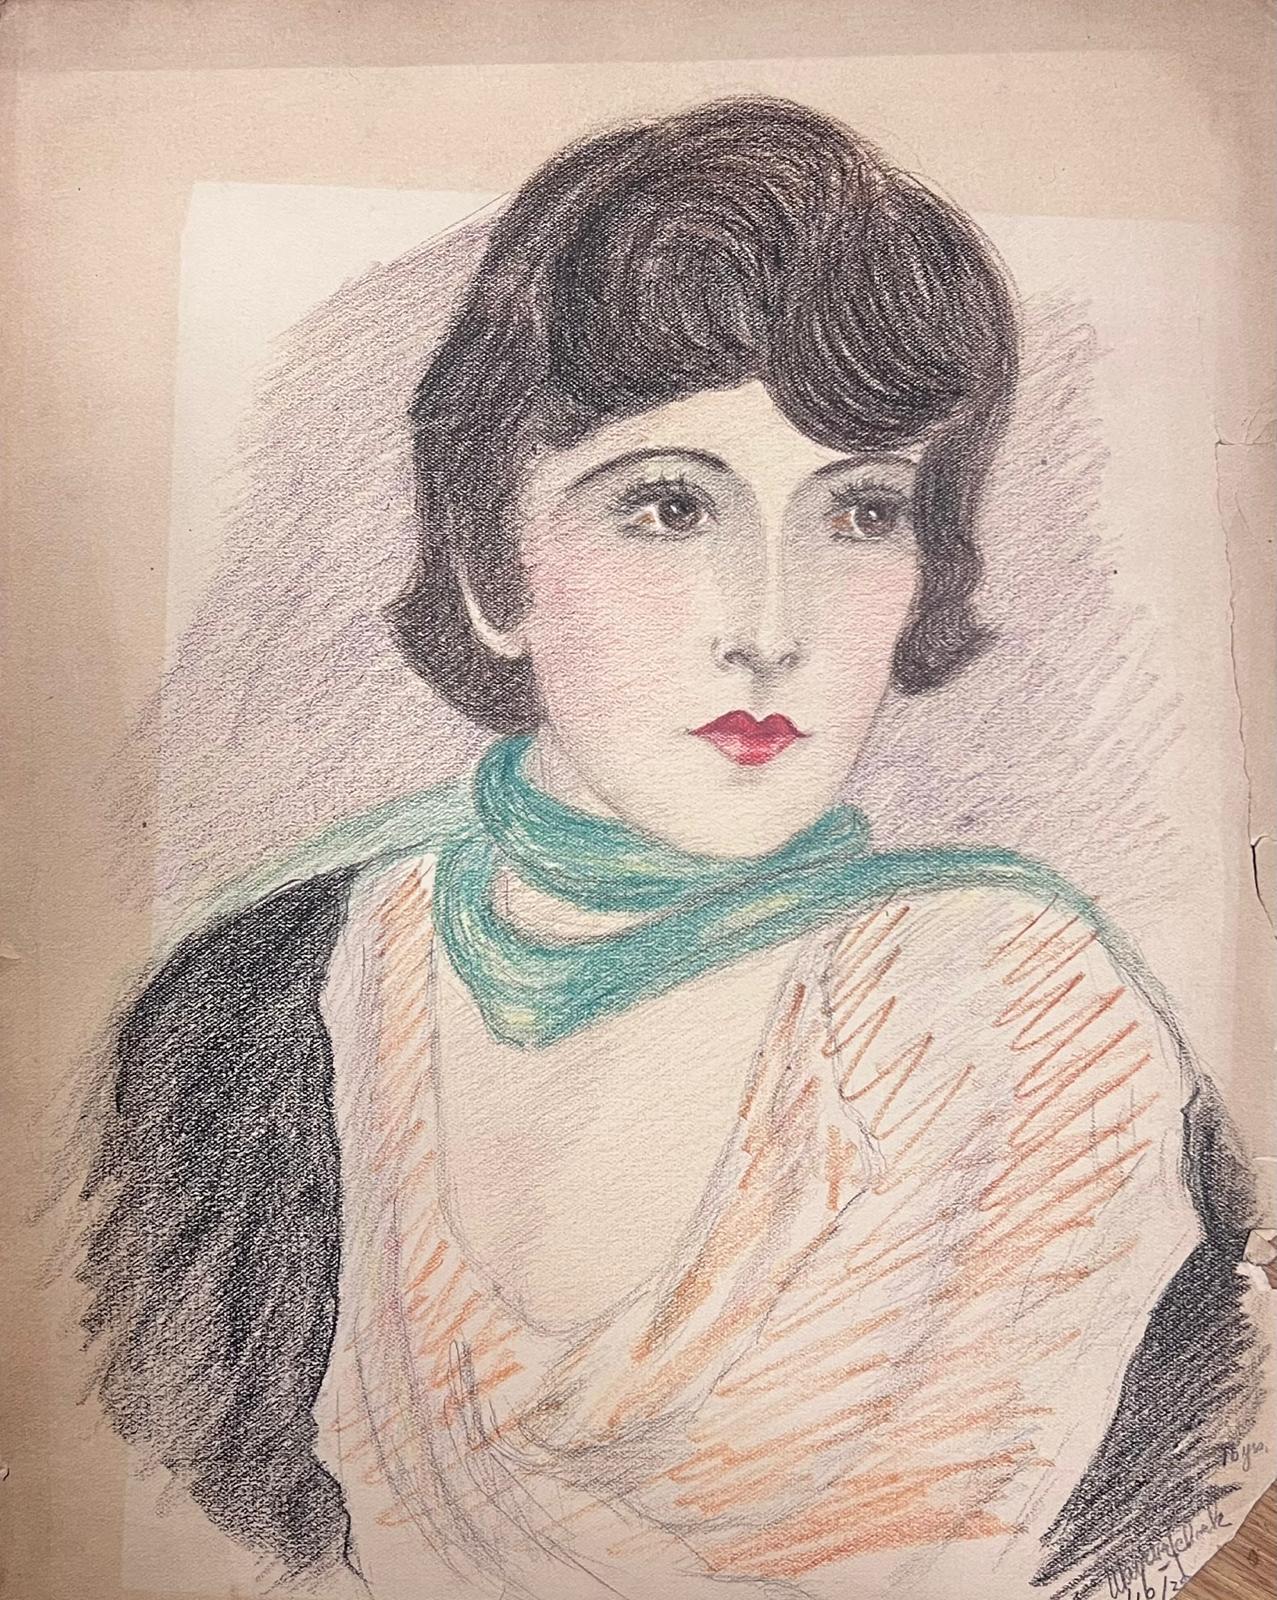 Original 1920er/30er Jahre Porträt einer eleganten jungen Dame aus der Gesellschaft, exquisite Zeichnung – Painting von Marjorie Schiele (1913-2008)